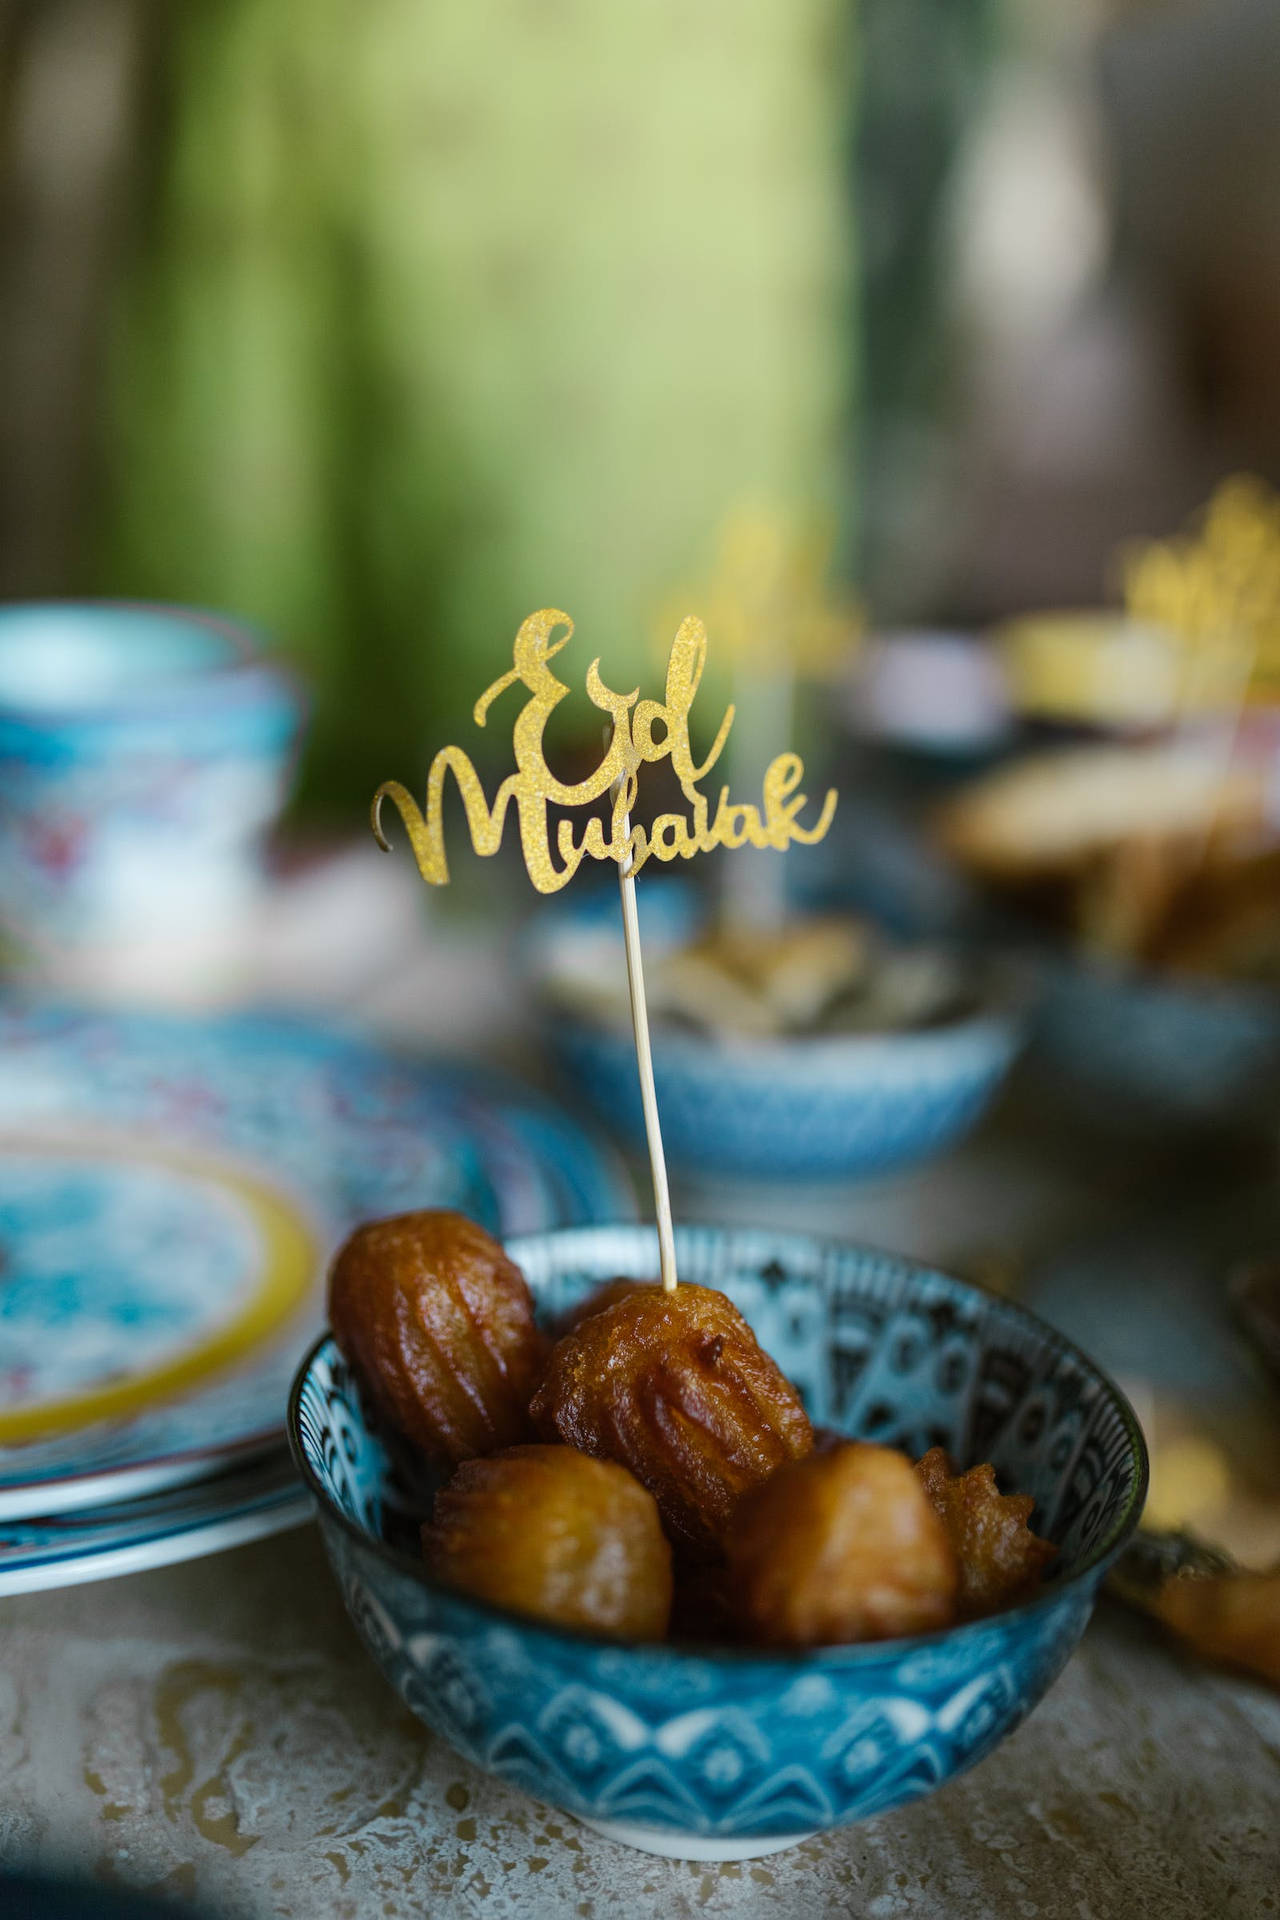 Caption: Celebrating Eid Mubarak With Joy & Festivity